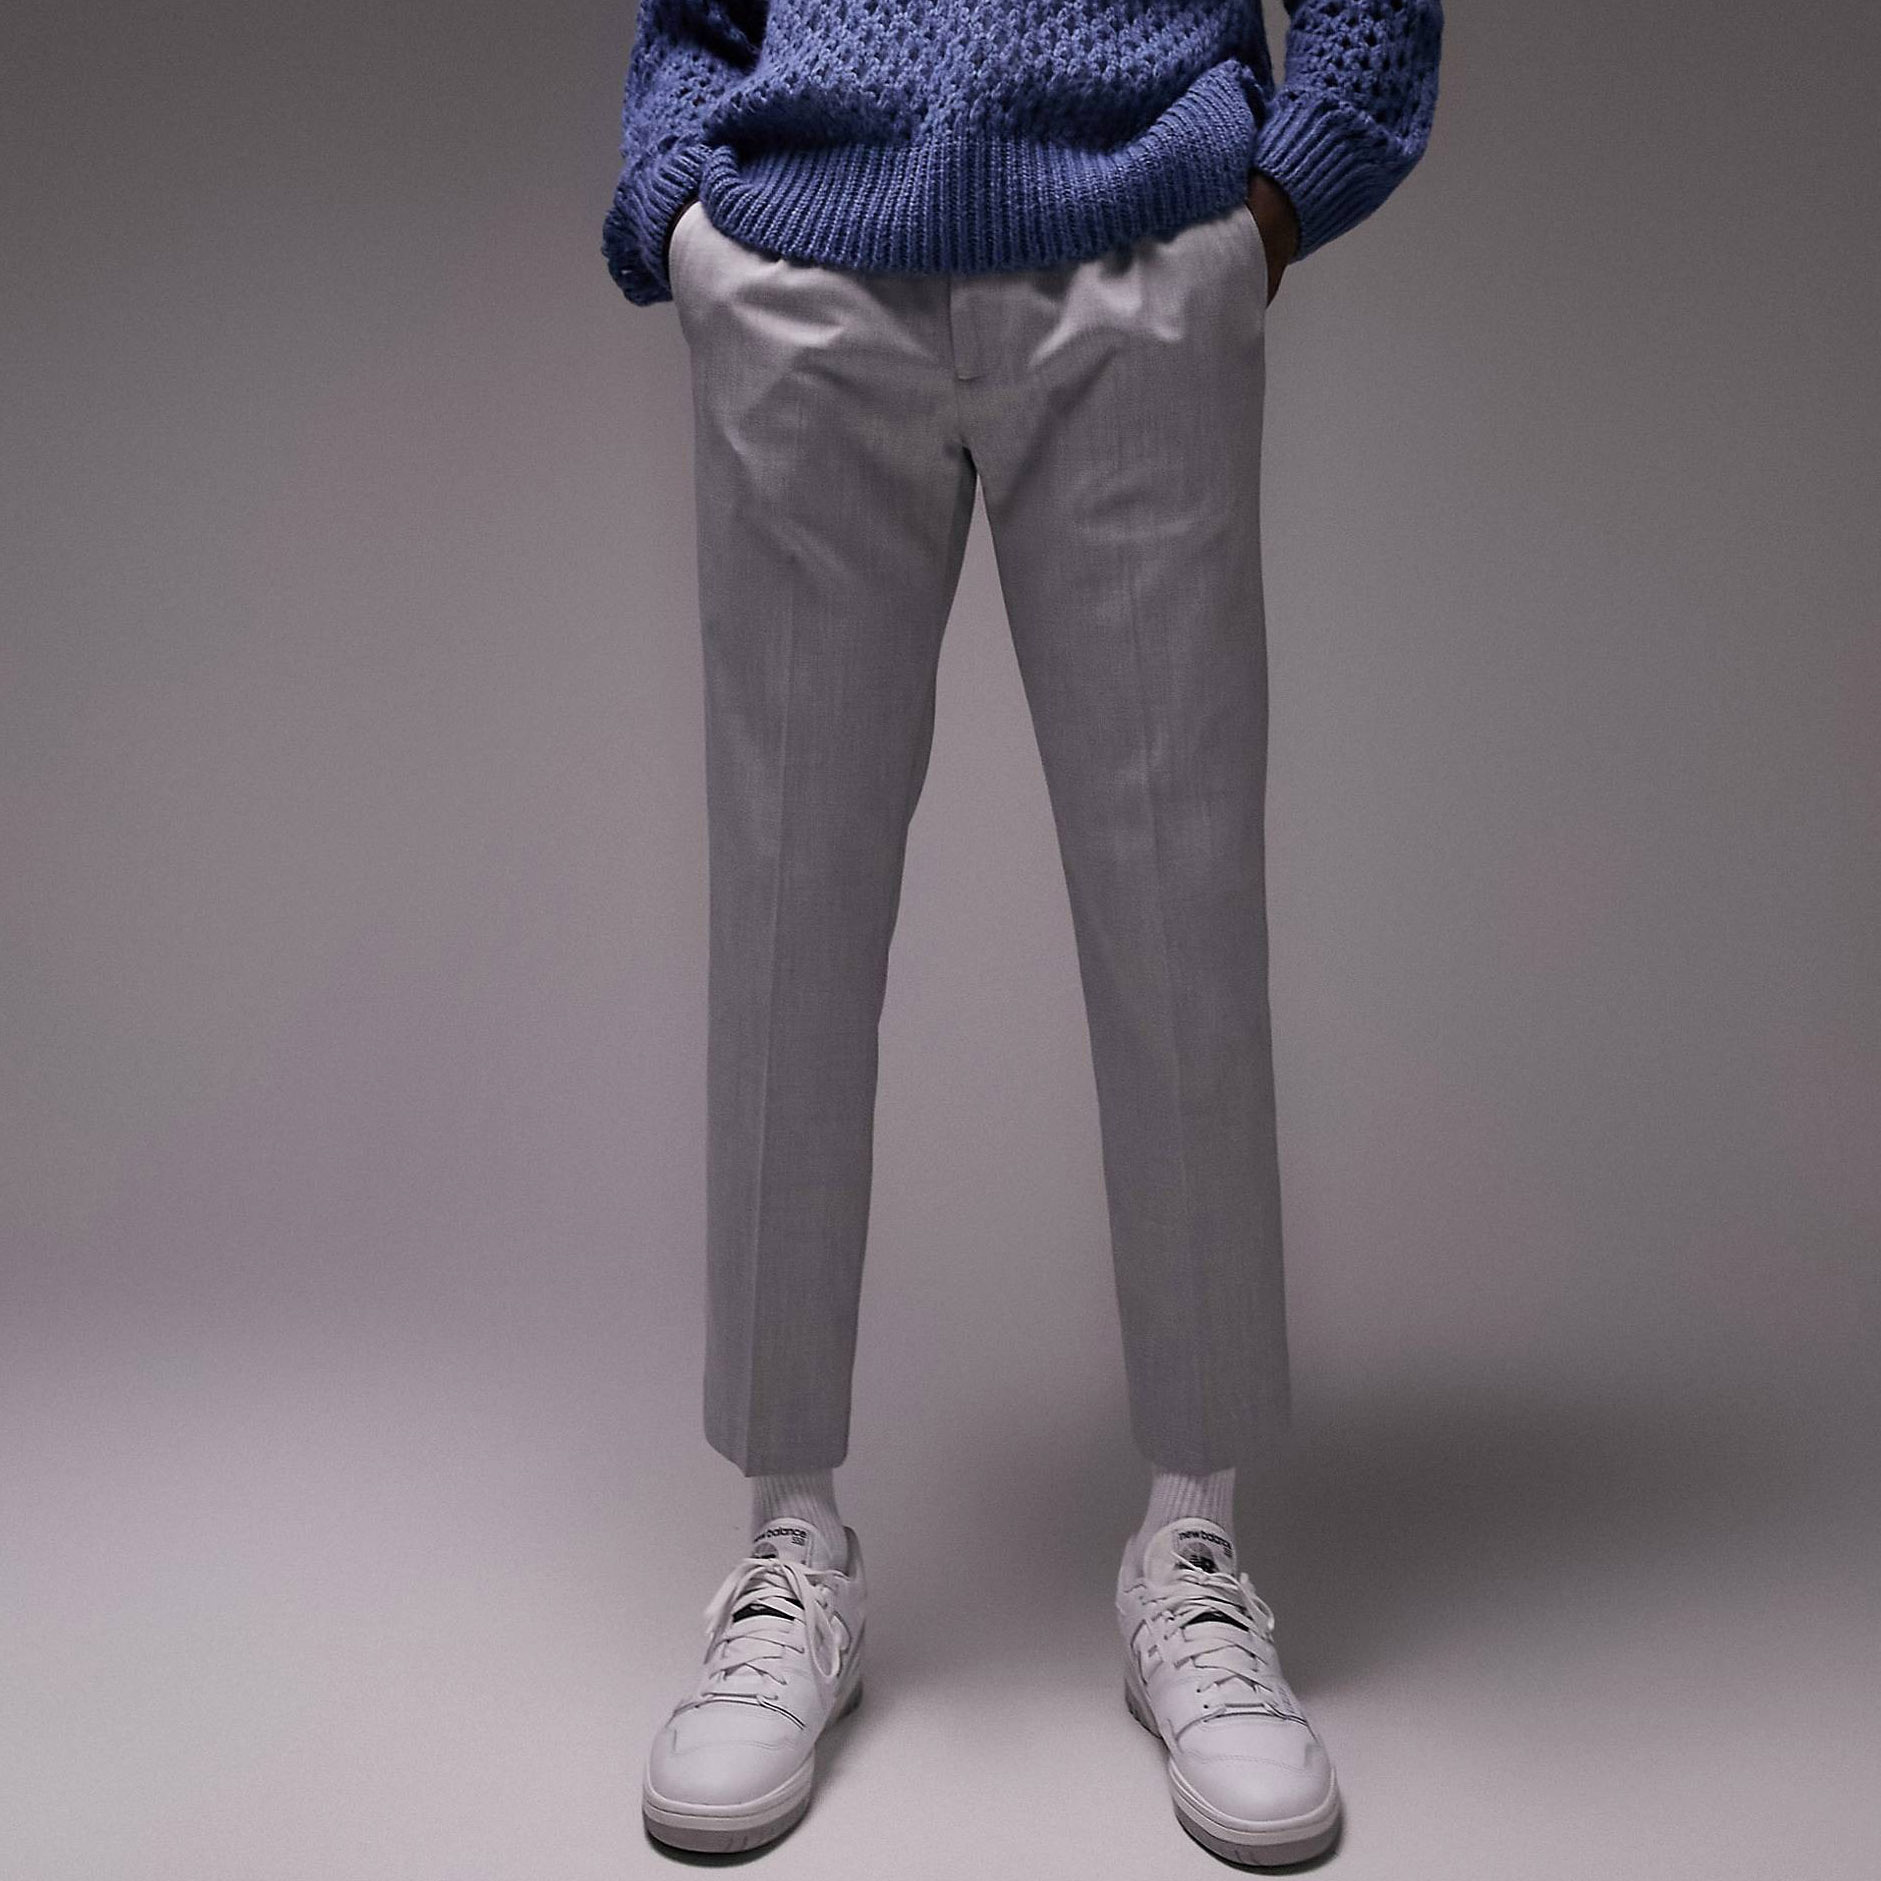 Брюки Topman Skinny Smart With Elasticated Waistband, светло-серый брюки zara cropped with elasticated waistband бежевый